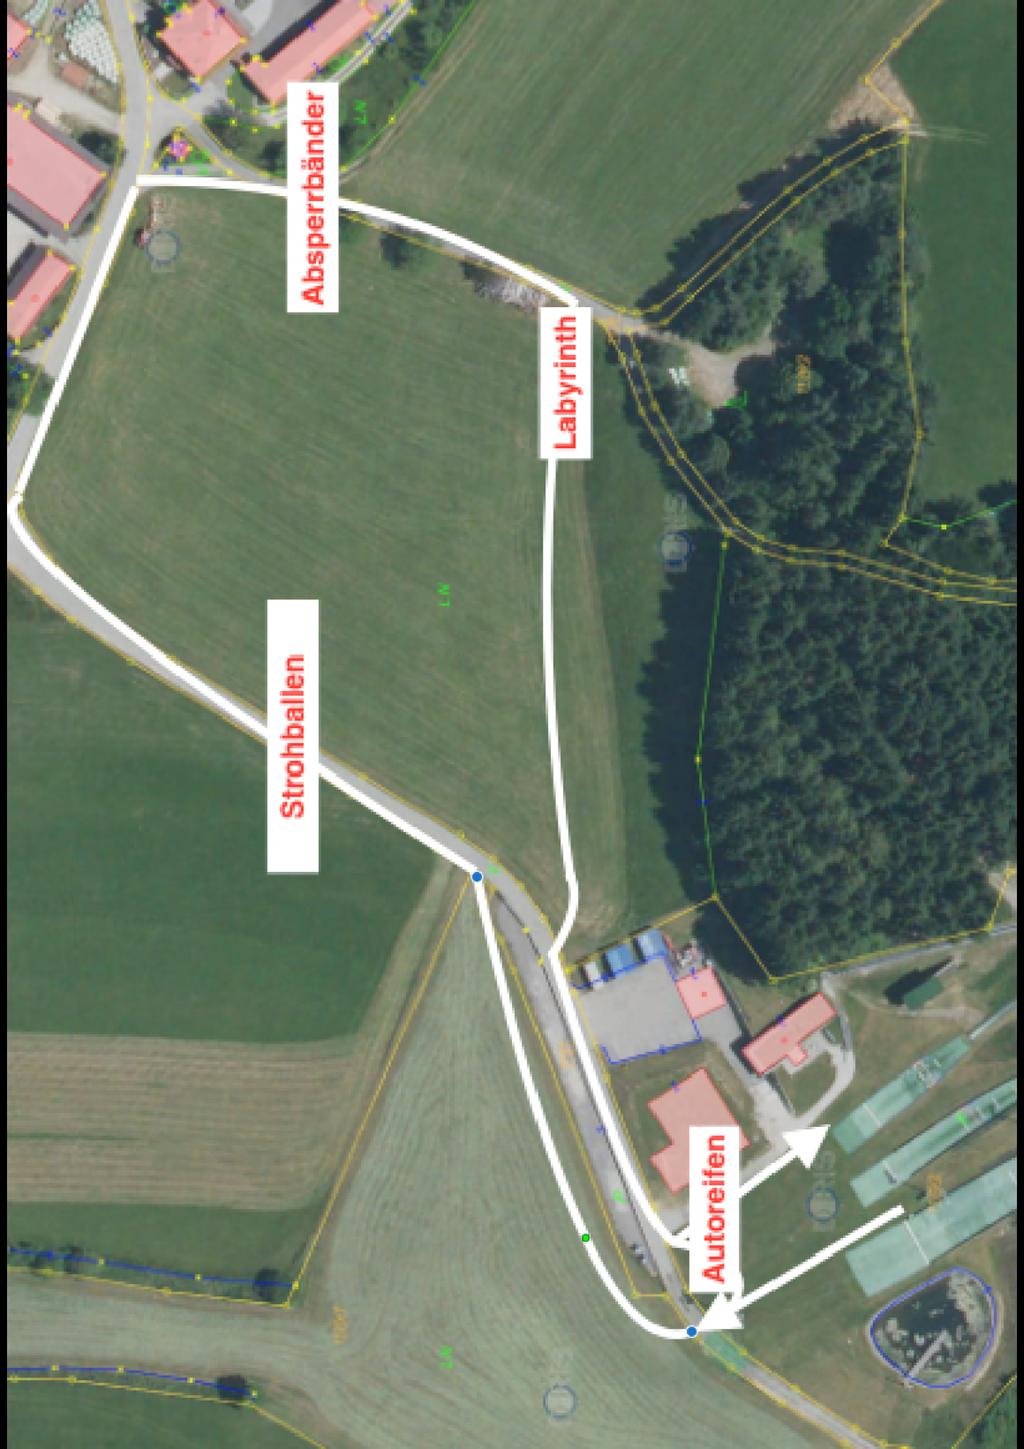 SC Höhnhart Streckenplan: Strohballen Absperrbänder Labyrinth Autoreifen 3-4 Reihen Strohballen über die ganze Laufstrecke als Hürdenlauf Absperrbänder mit unterschiedlicher Höhe Labyrinth aus